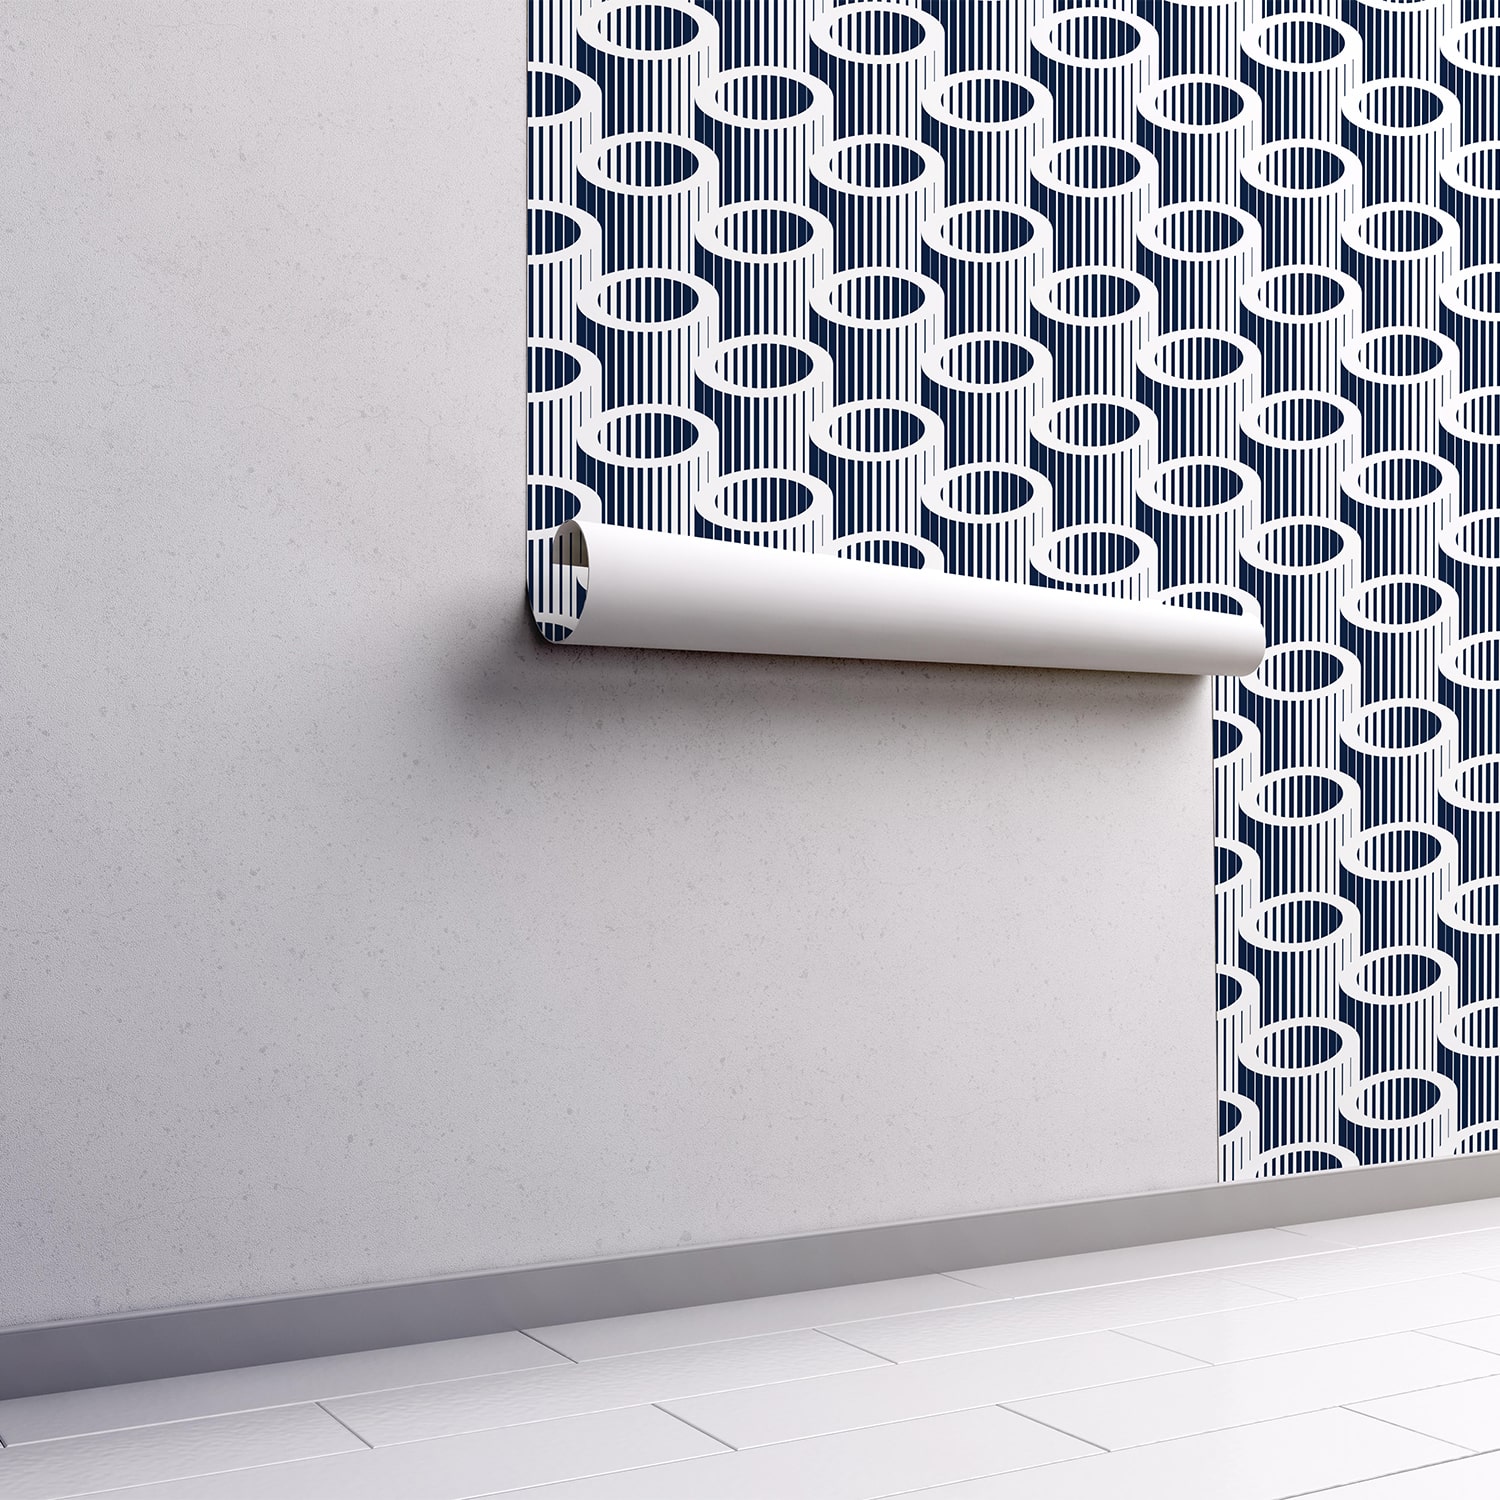 PP48-mur.rouleau-papier-peint-adhesif-decoratif-revetement-vinyle-tubes-3D-renovation-meuble-mur-min